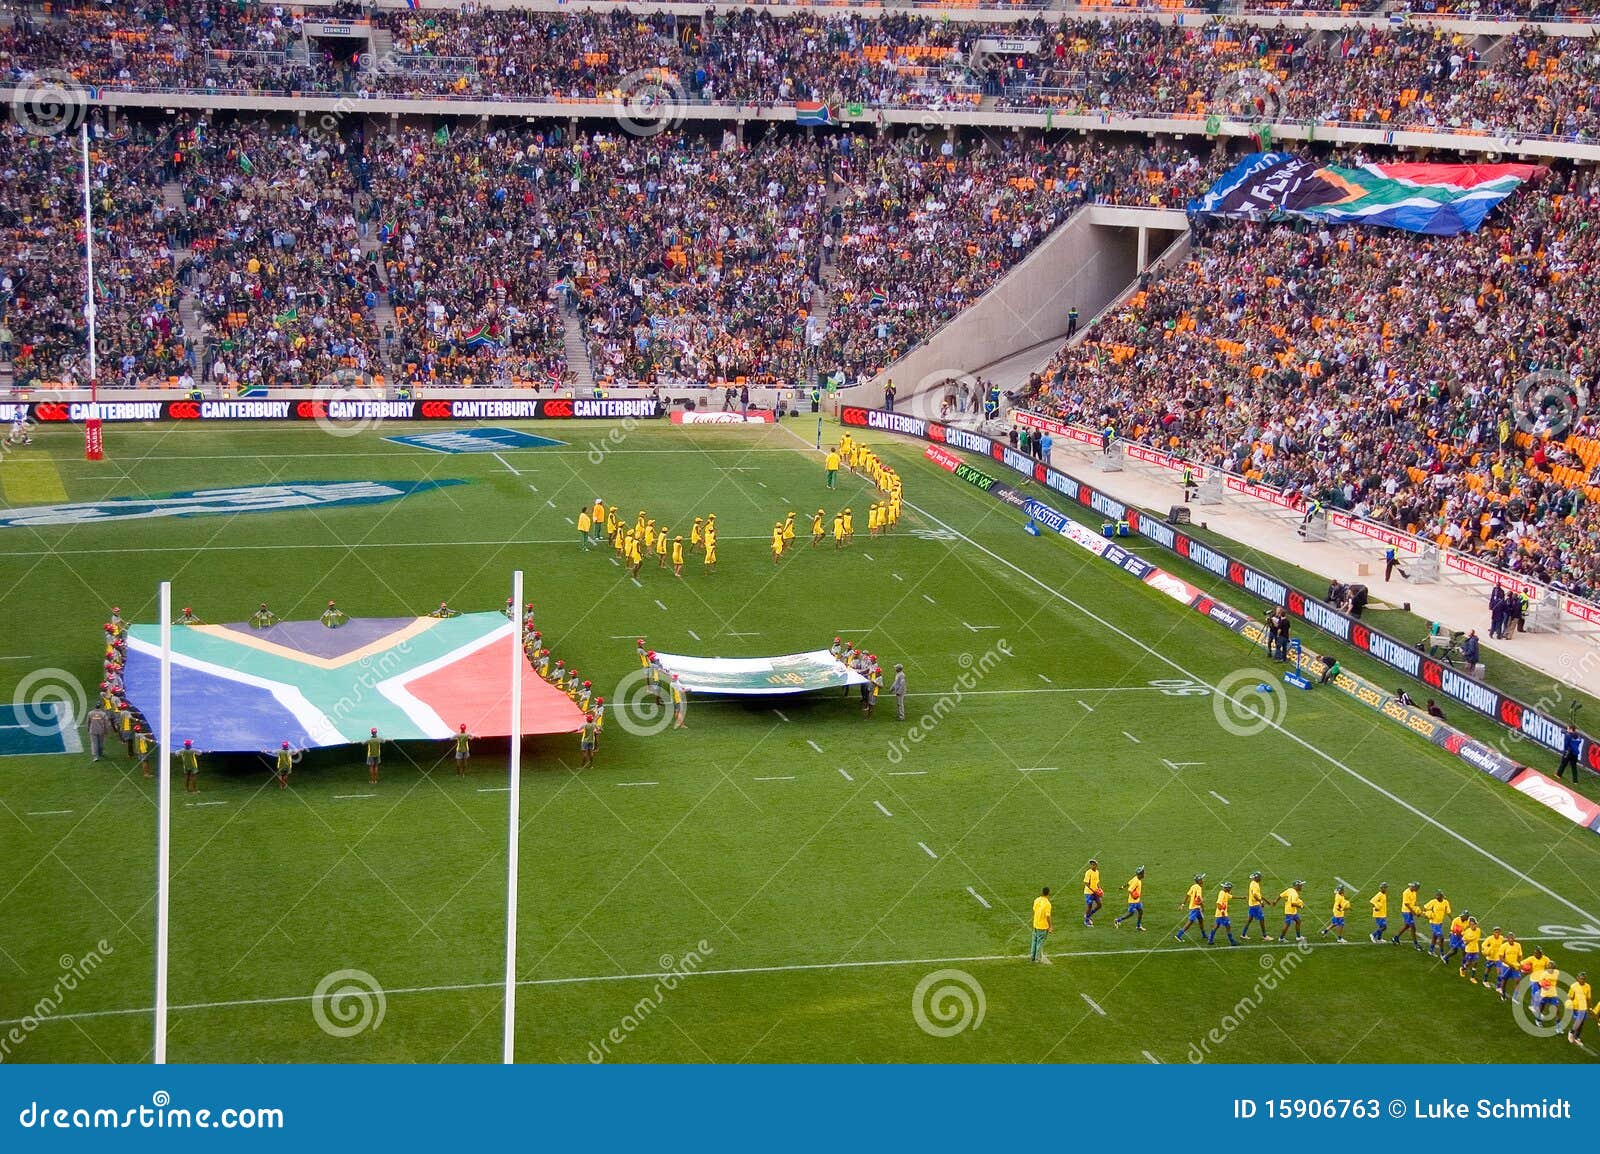 Het openen van Zuid-Afrika versus de Deken van Nieuw Zeeland. JOHANNESBURG, ZUID-AFRIKA - AUGUSTUS 21: Het openen van Zuid-Afrika versus de gelijke van het Rugby van Nieuw Zeeland bij het stadion FNB op 21 Augustus, 2010. Nieuw Zeeland sloeg Zuid-Afrika door 29 punten aan 22.